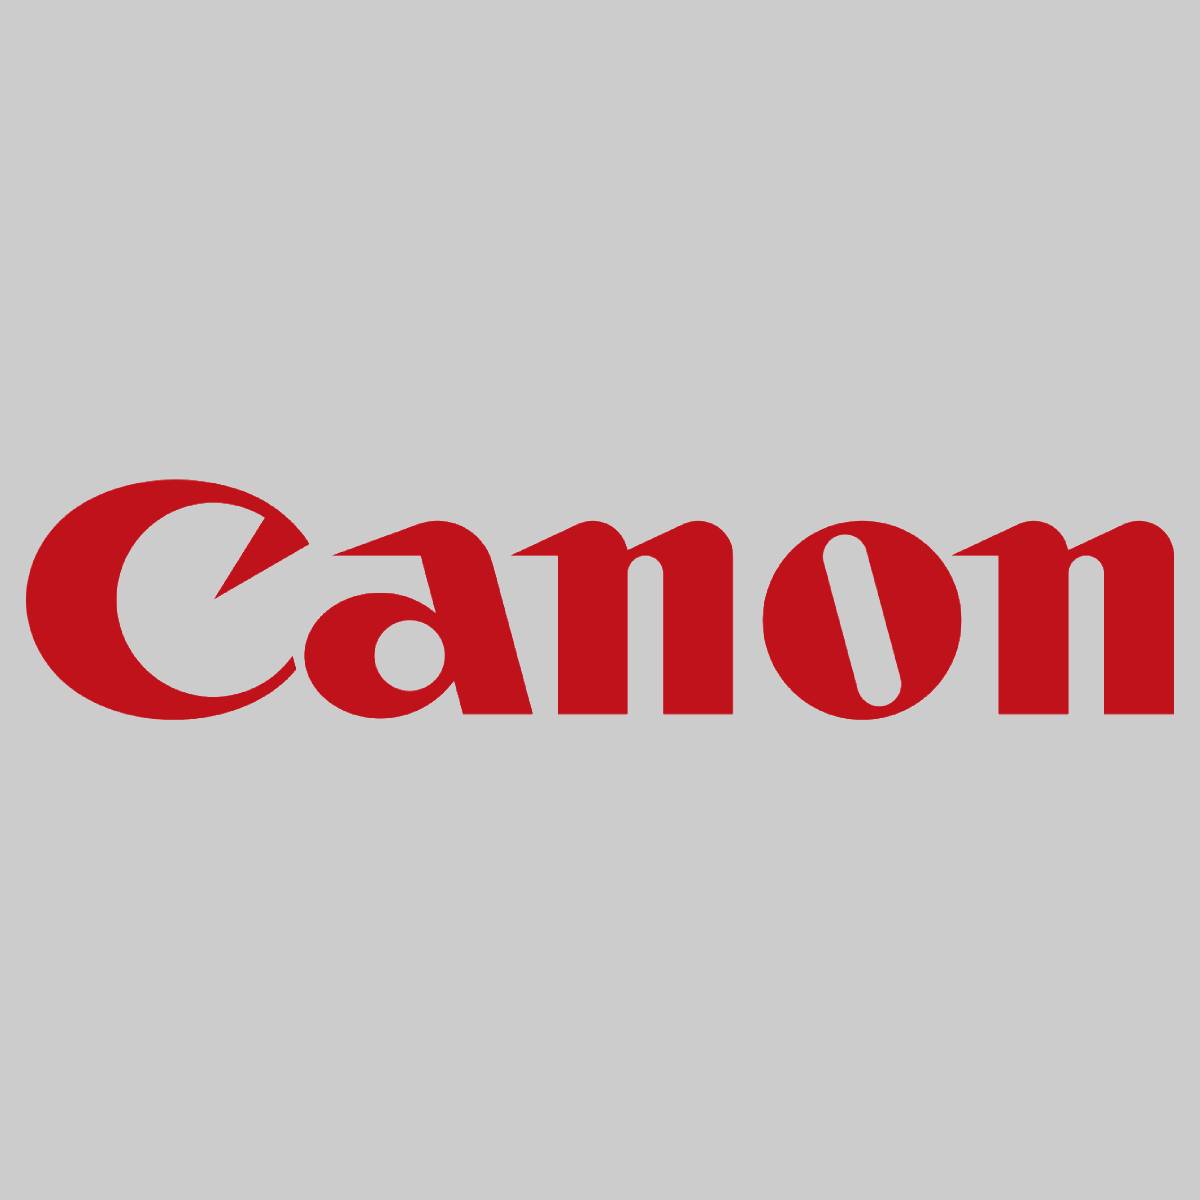 "Original Canon FUSER OIL 1000ML FG5-3918-00L for CLC 700 800 900 950 1000 1130